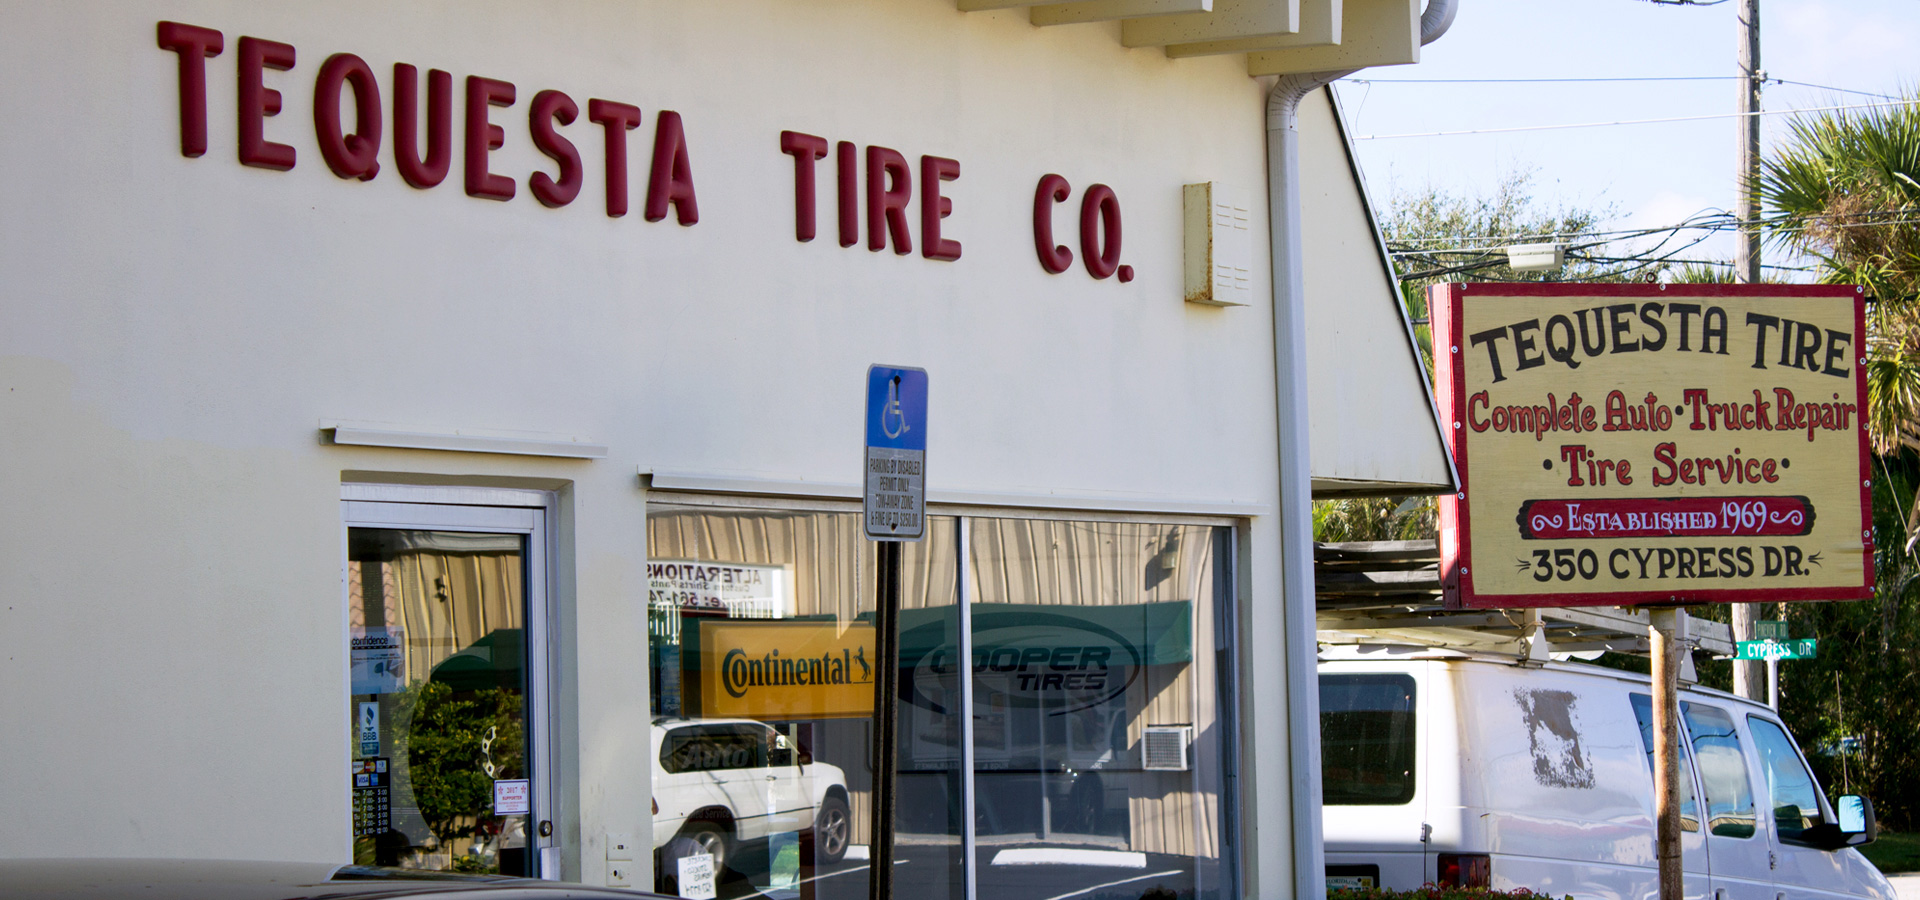 Tequesta Tire Shop in Tequesta, Florida